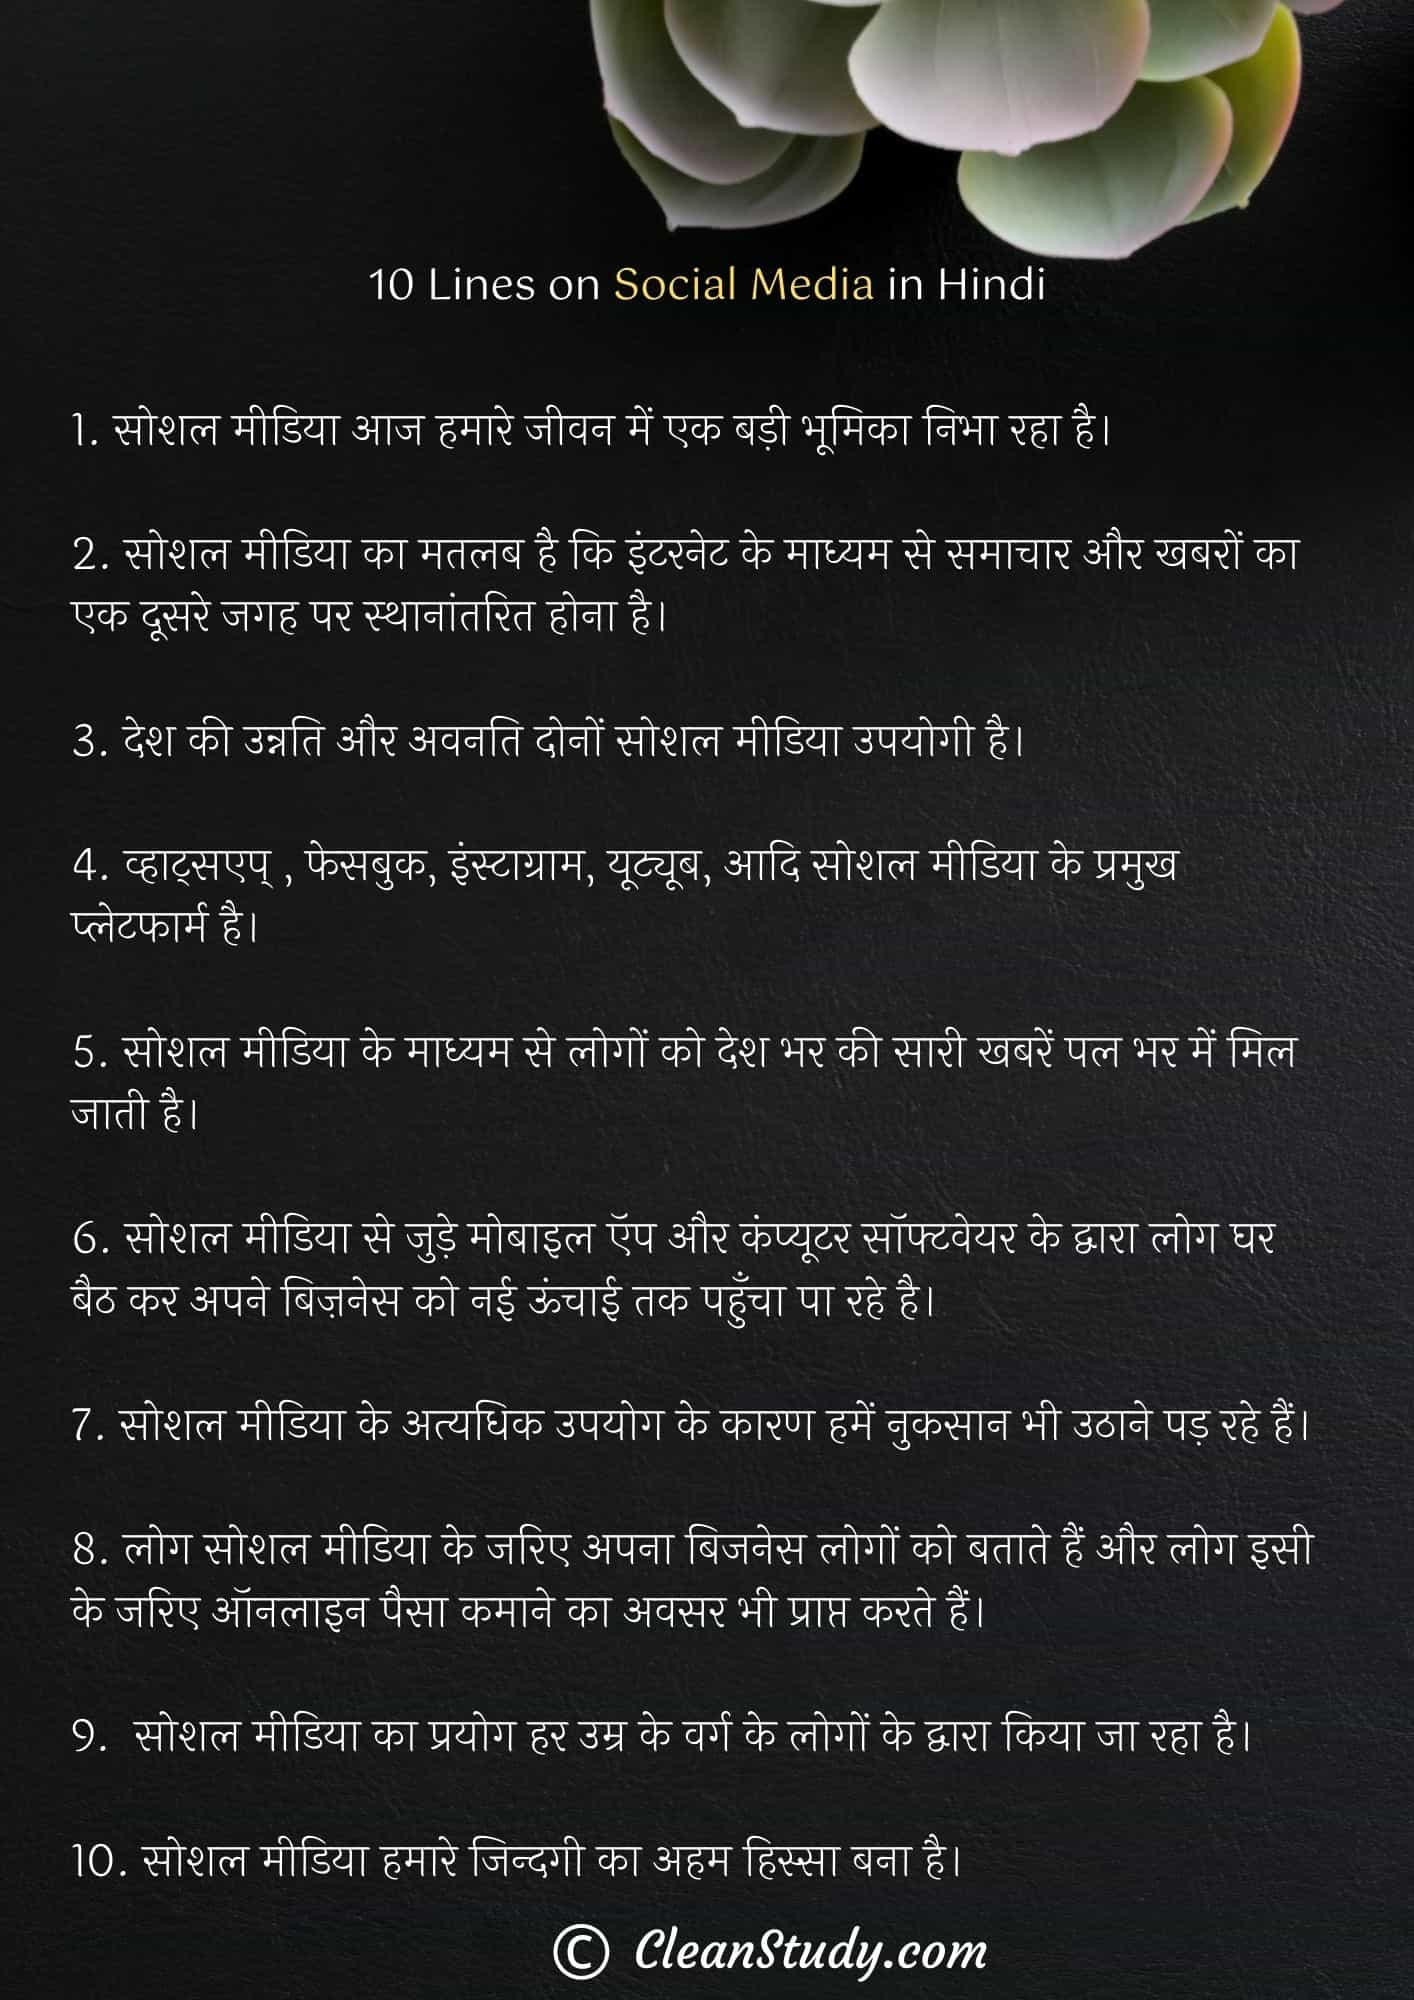 10 Lines on Social Media in Hindi